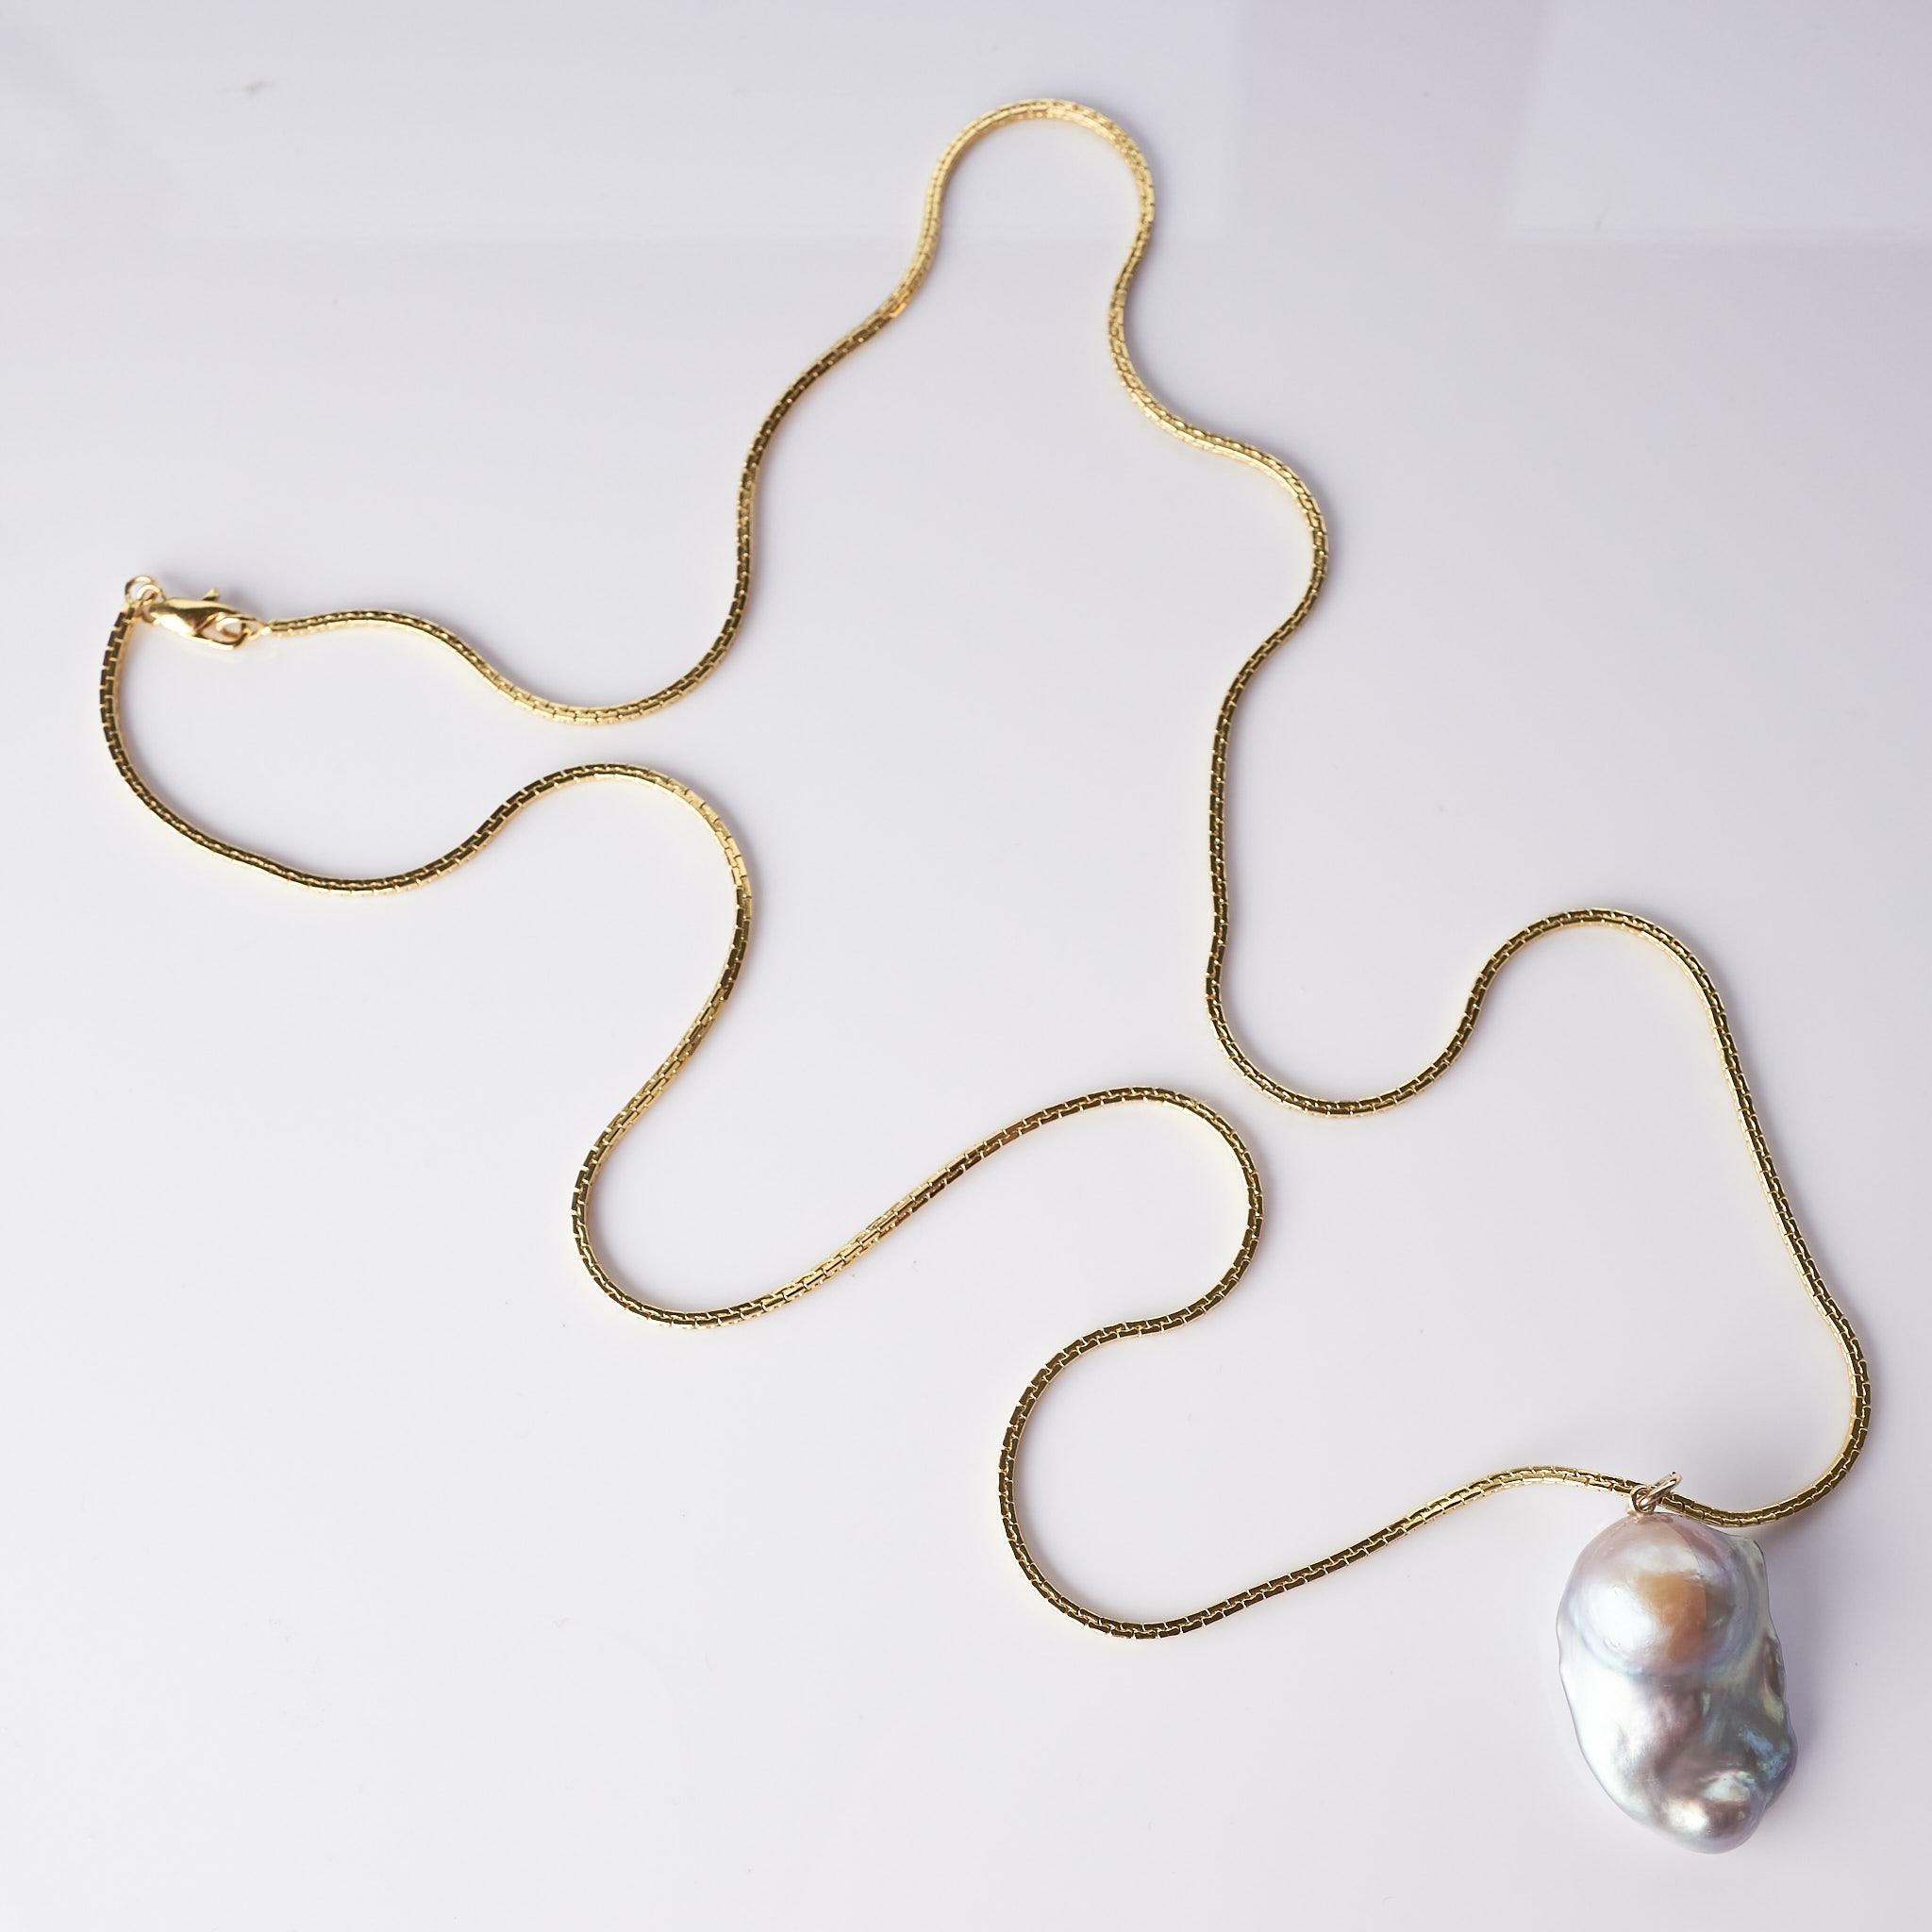 Uncut Pearl Chain Necklace Drop Pendant J Dauphin For Sale